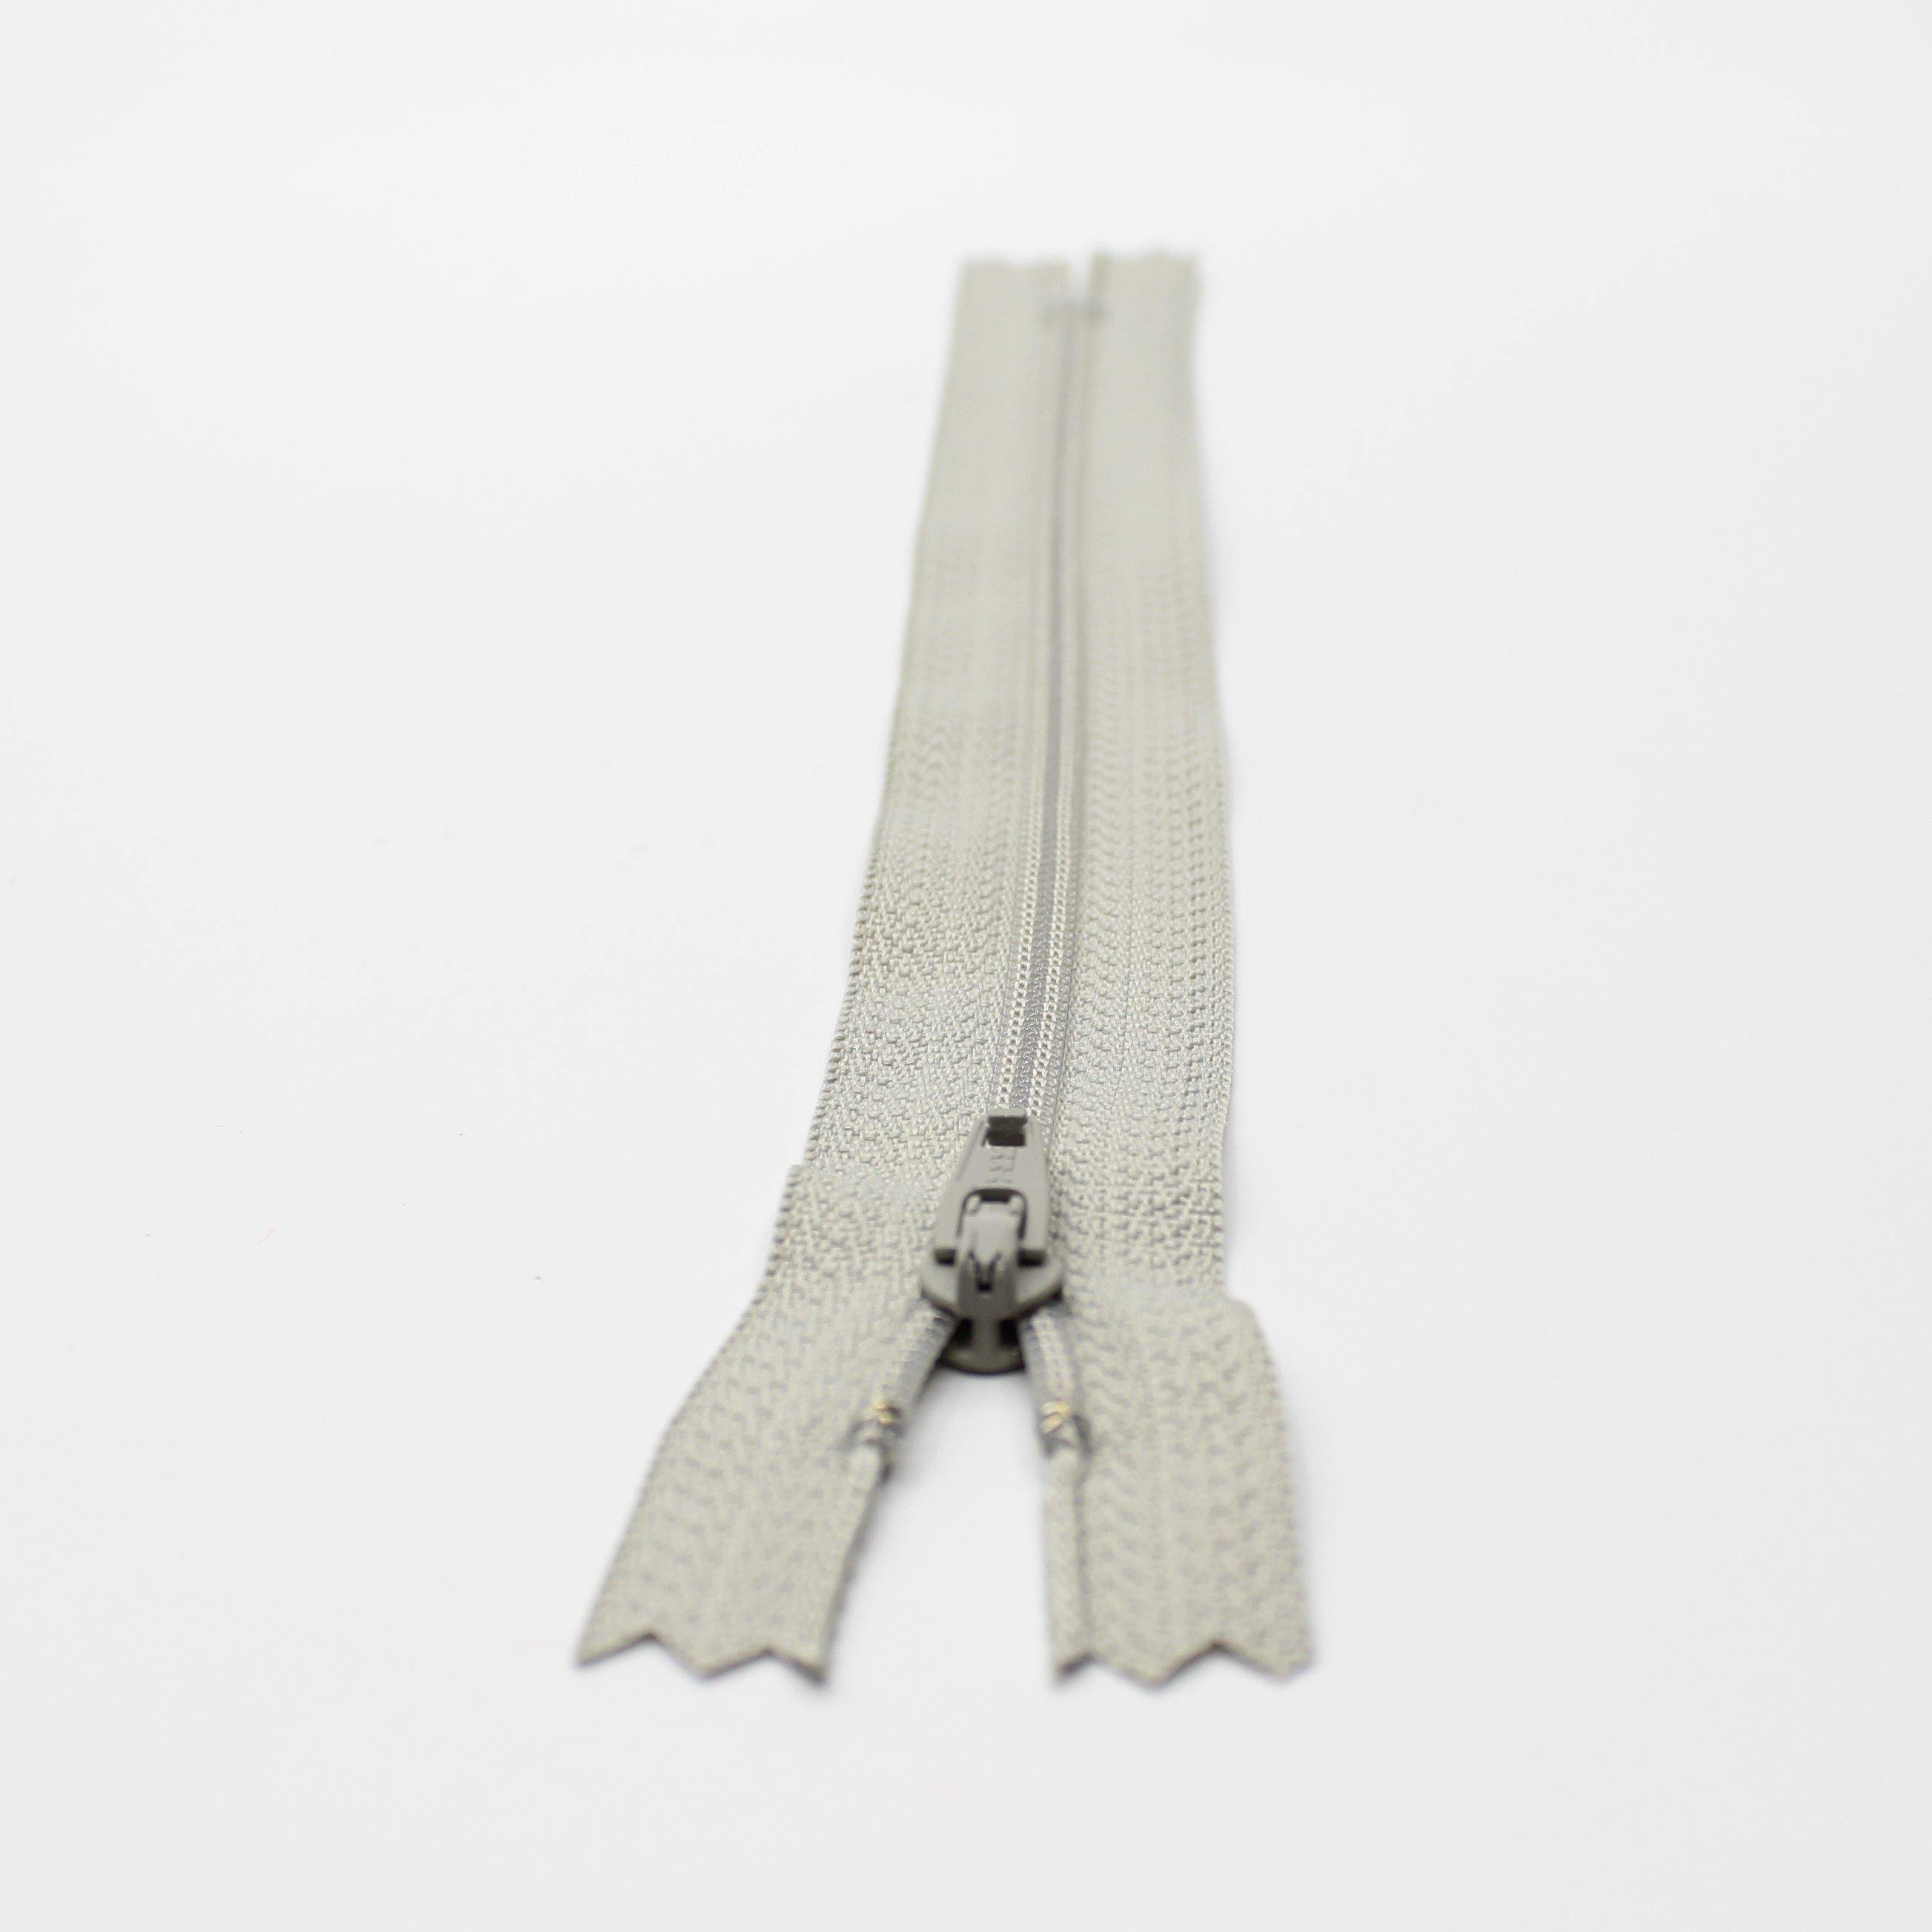 YKK - 18cm Nylon Zipper Size 3 - ACCESSOIRES LEDUC